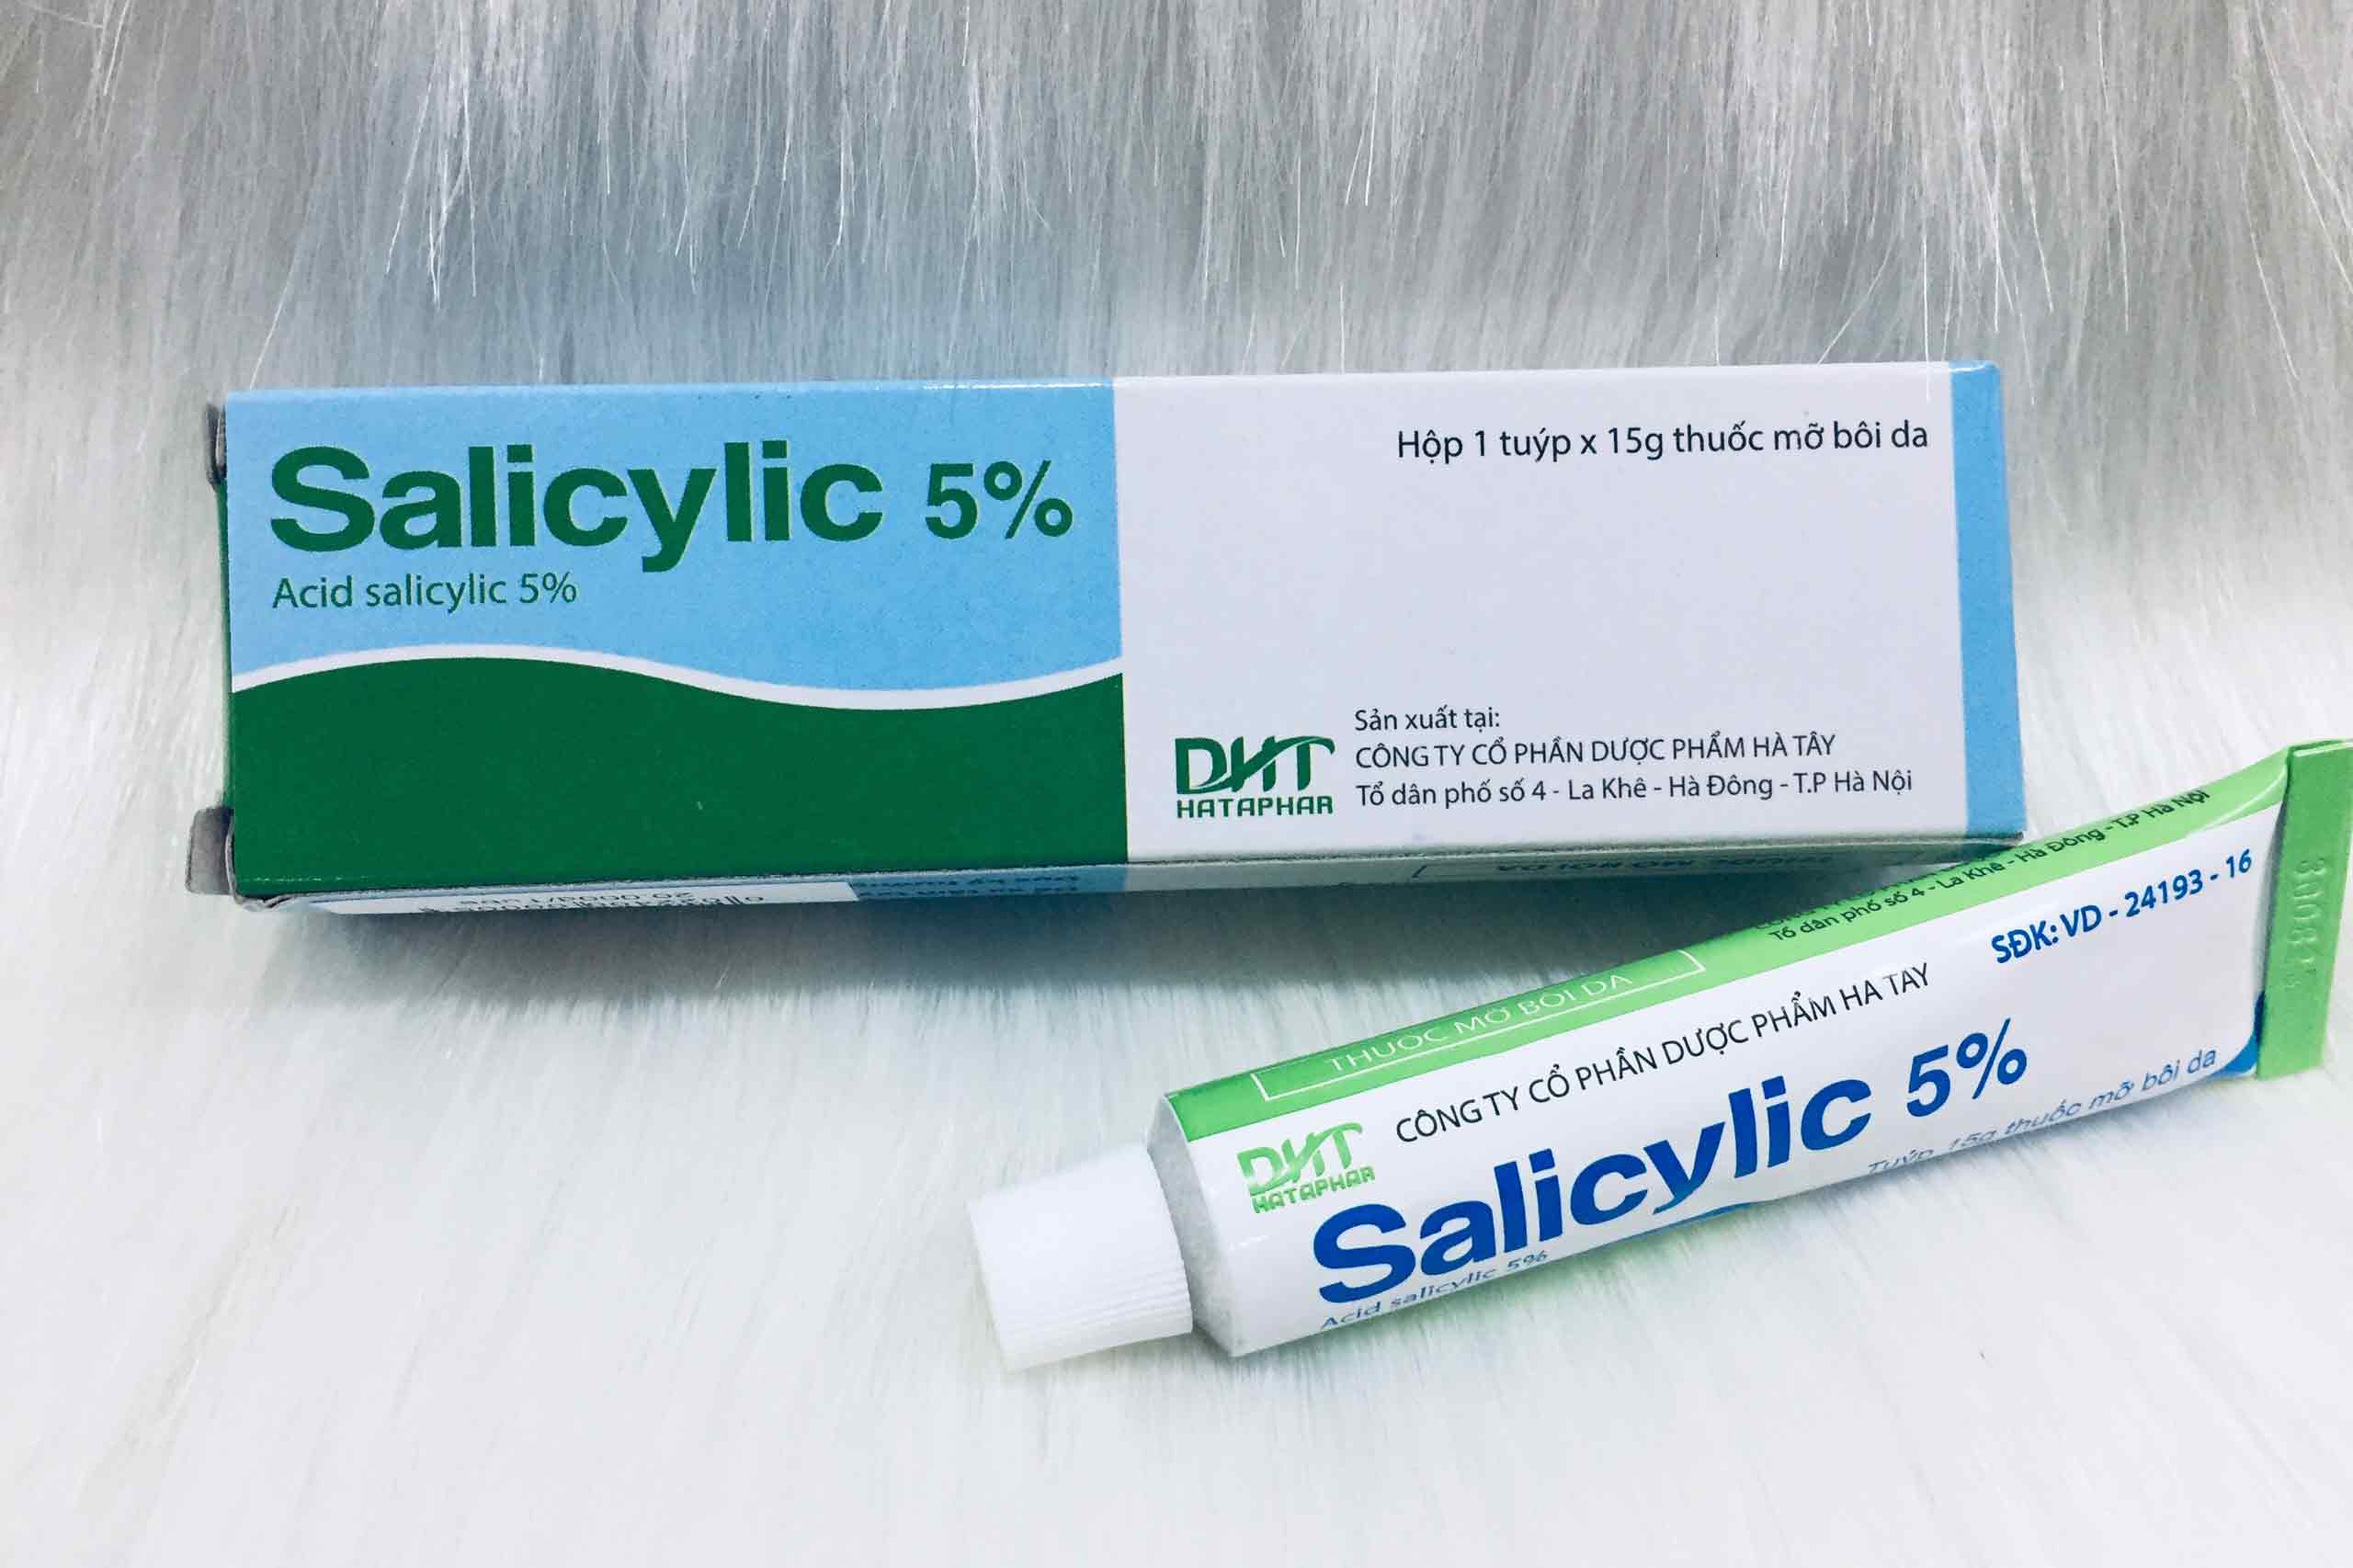 Salicylic acid 5% là một trong những loại thuốc thường được sử dụng trong điều trị thâm mụn